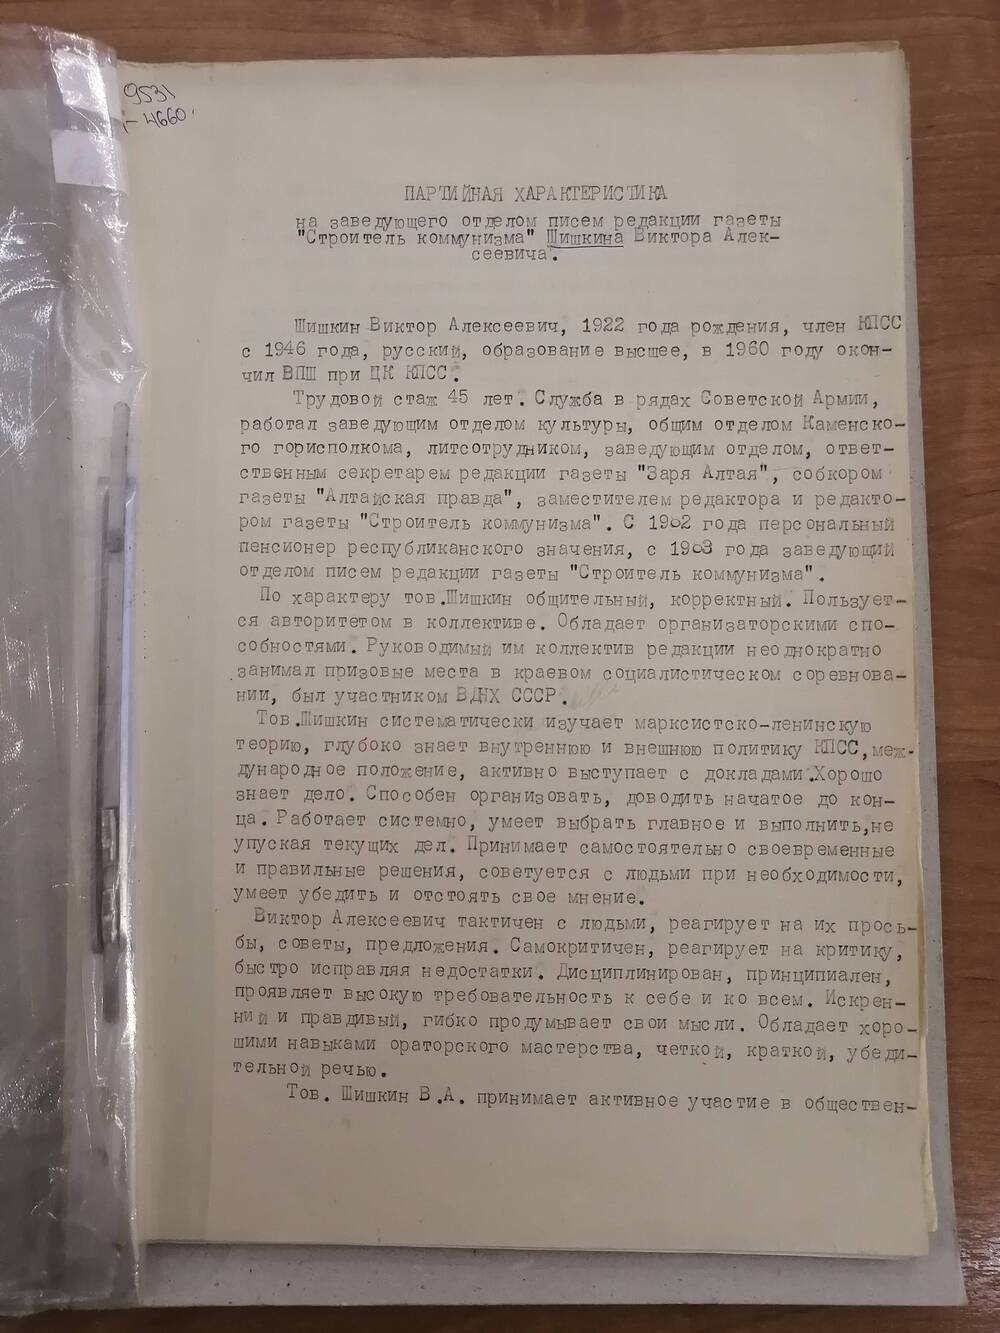 Характеристика партийная на заведующего отделом писем редакции газеты Строитель коммунизма Шишкина Виктора Алексеевича.